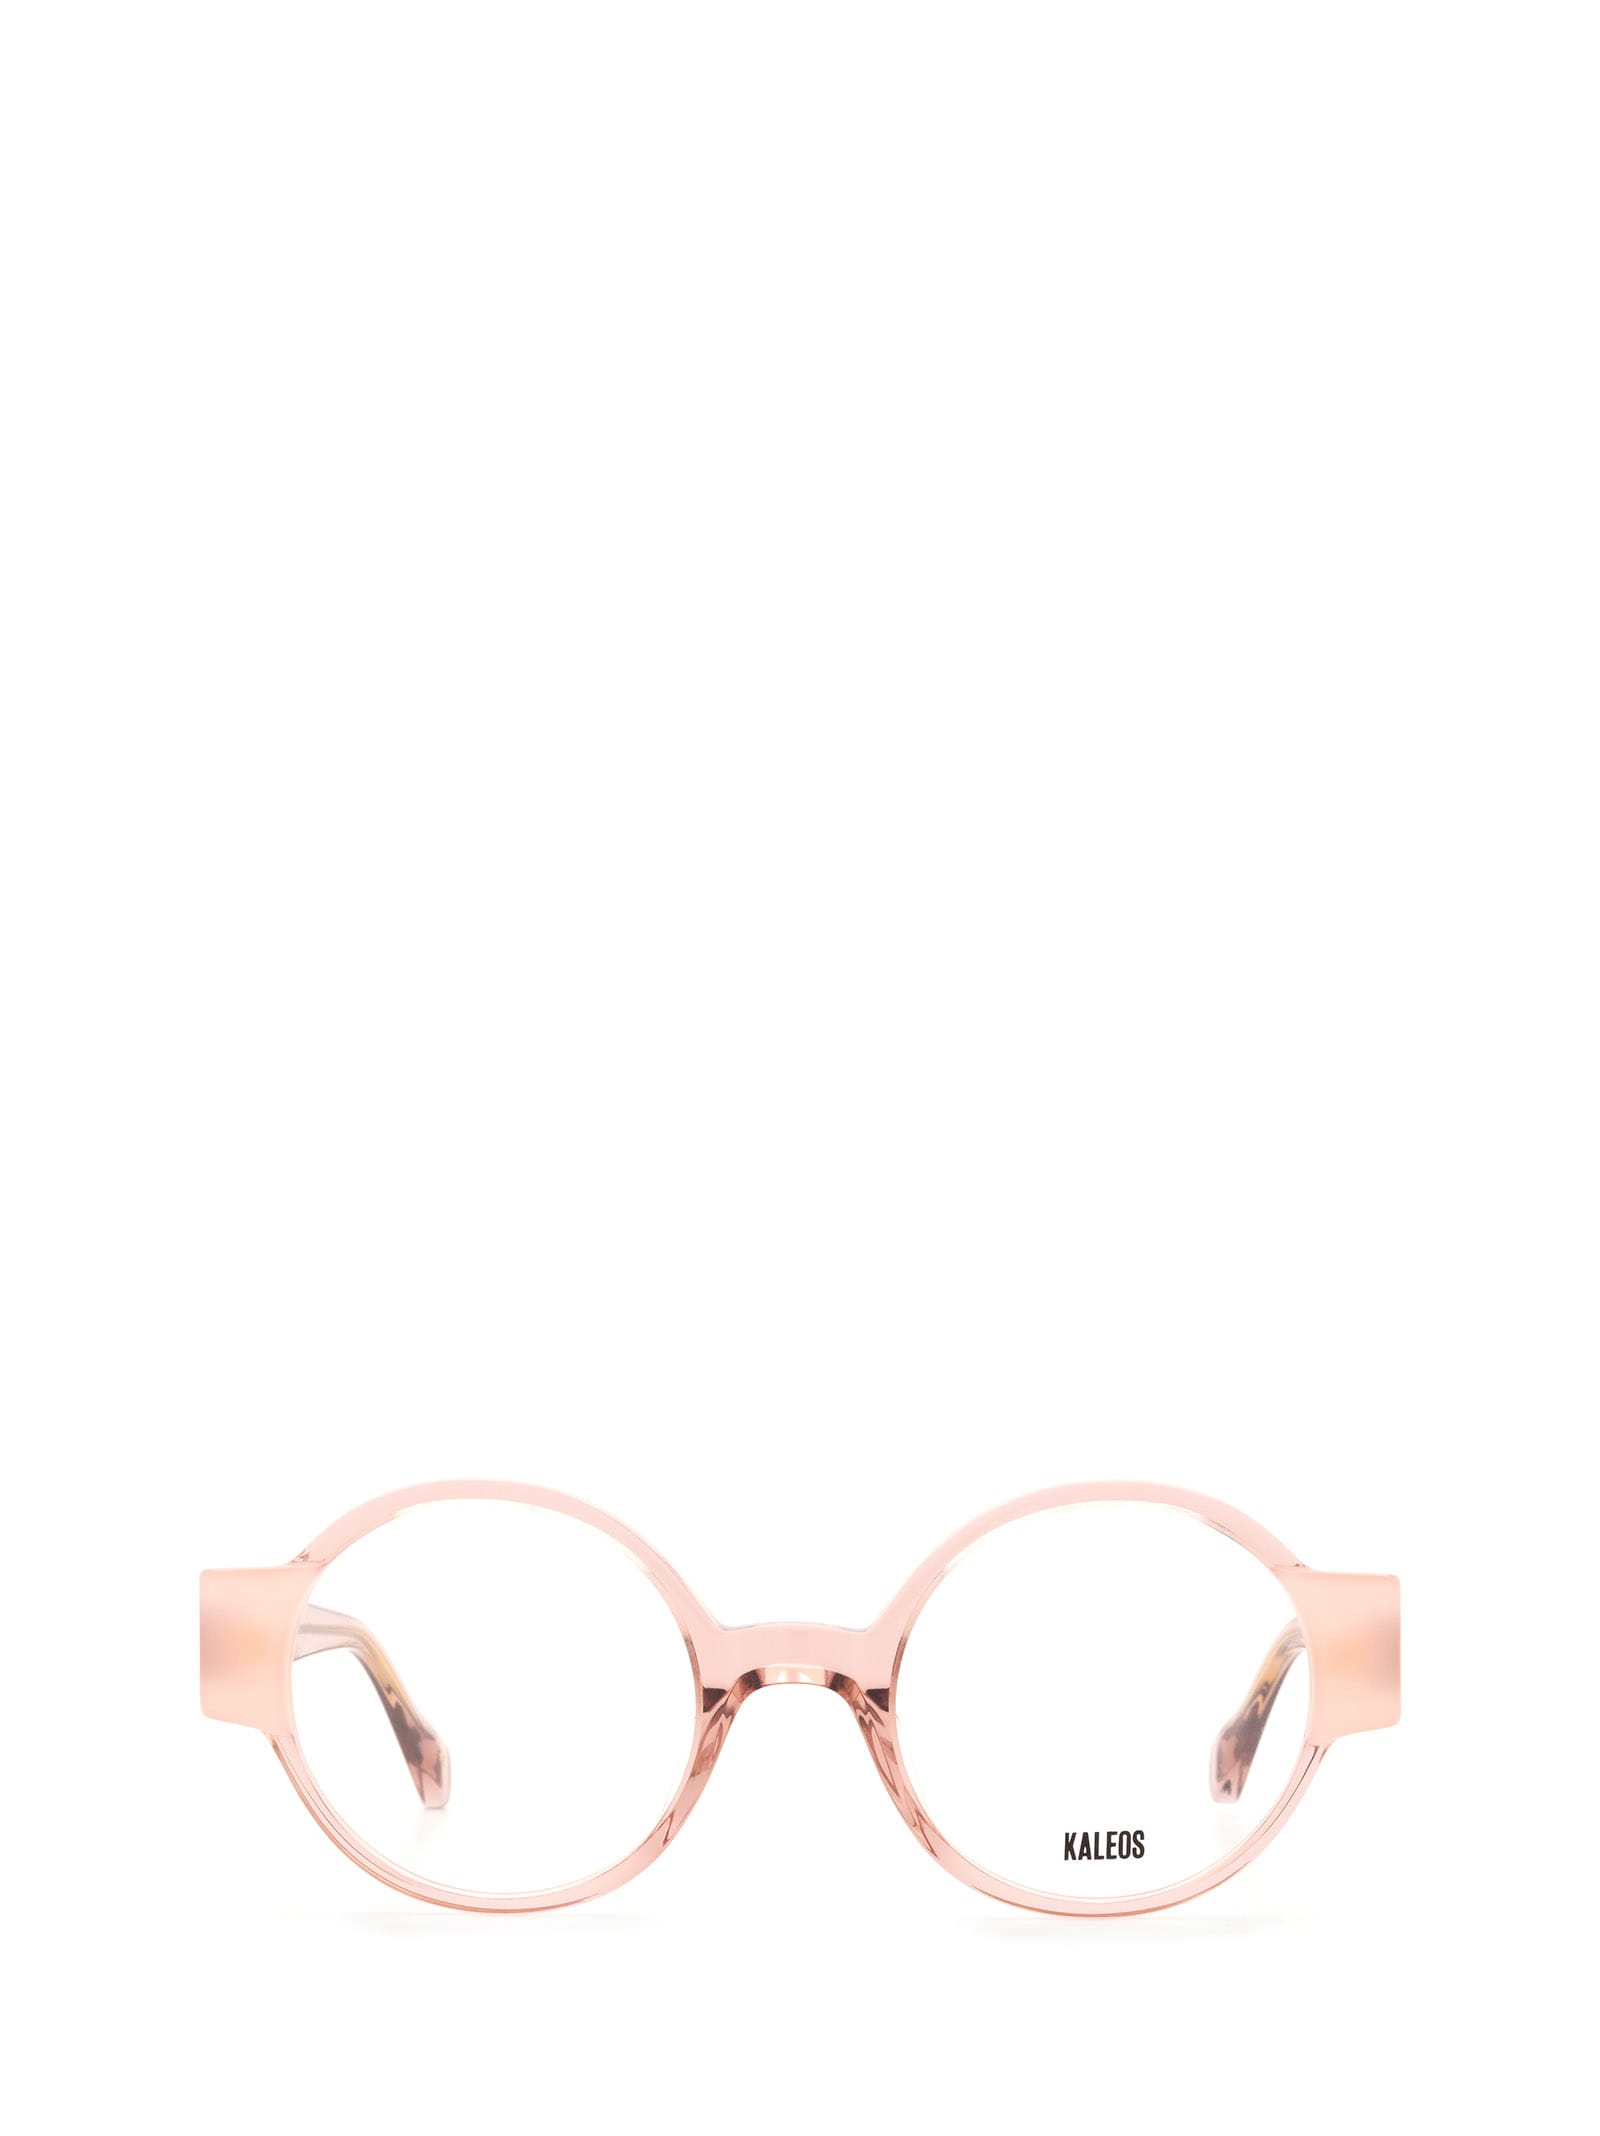 Kaleos Cassen Transparent Pink & Translucent Pink Glasses